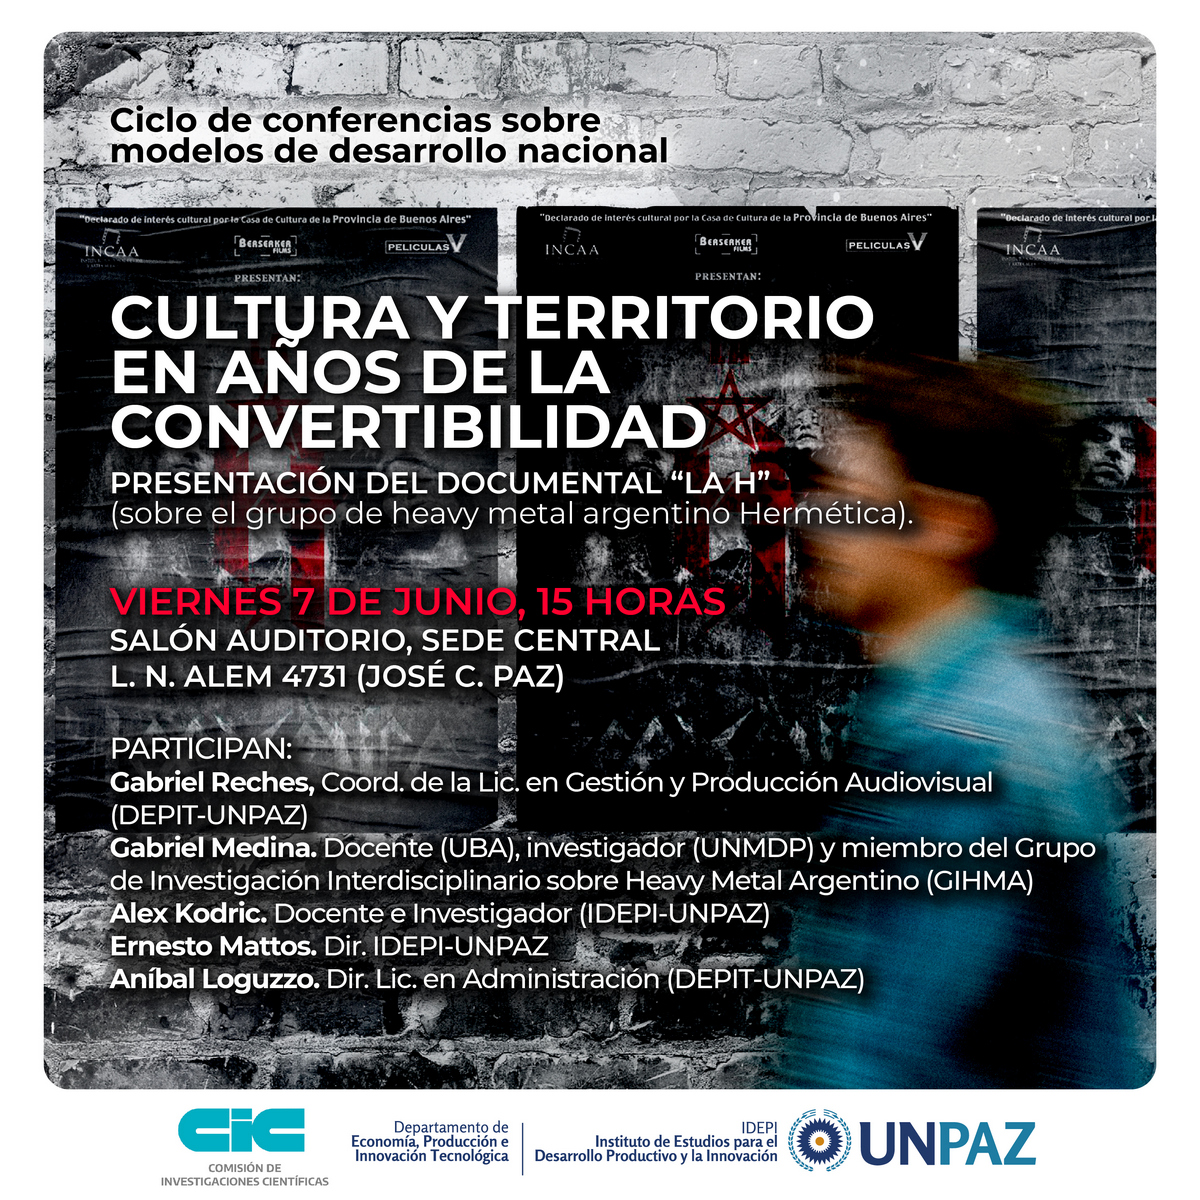 Cultura y territorio en los años de la convertibilidad - Ciclo de conferencias sobre modelos de desarrollo nacional